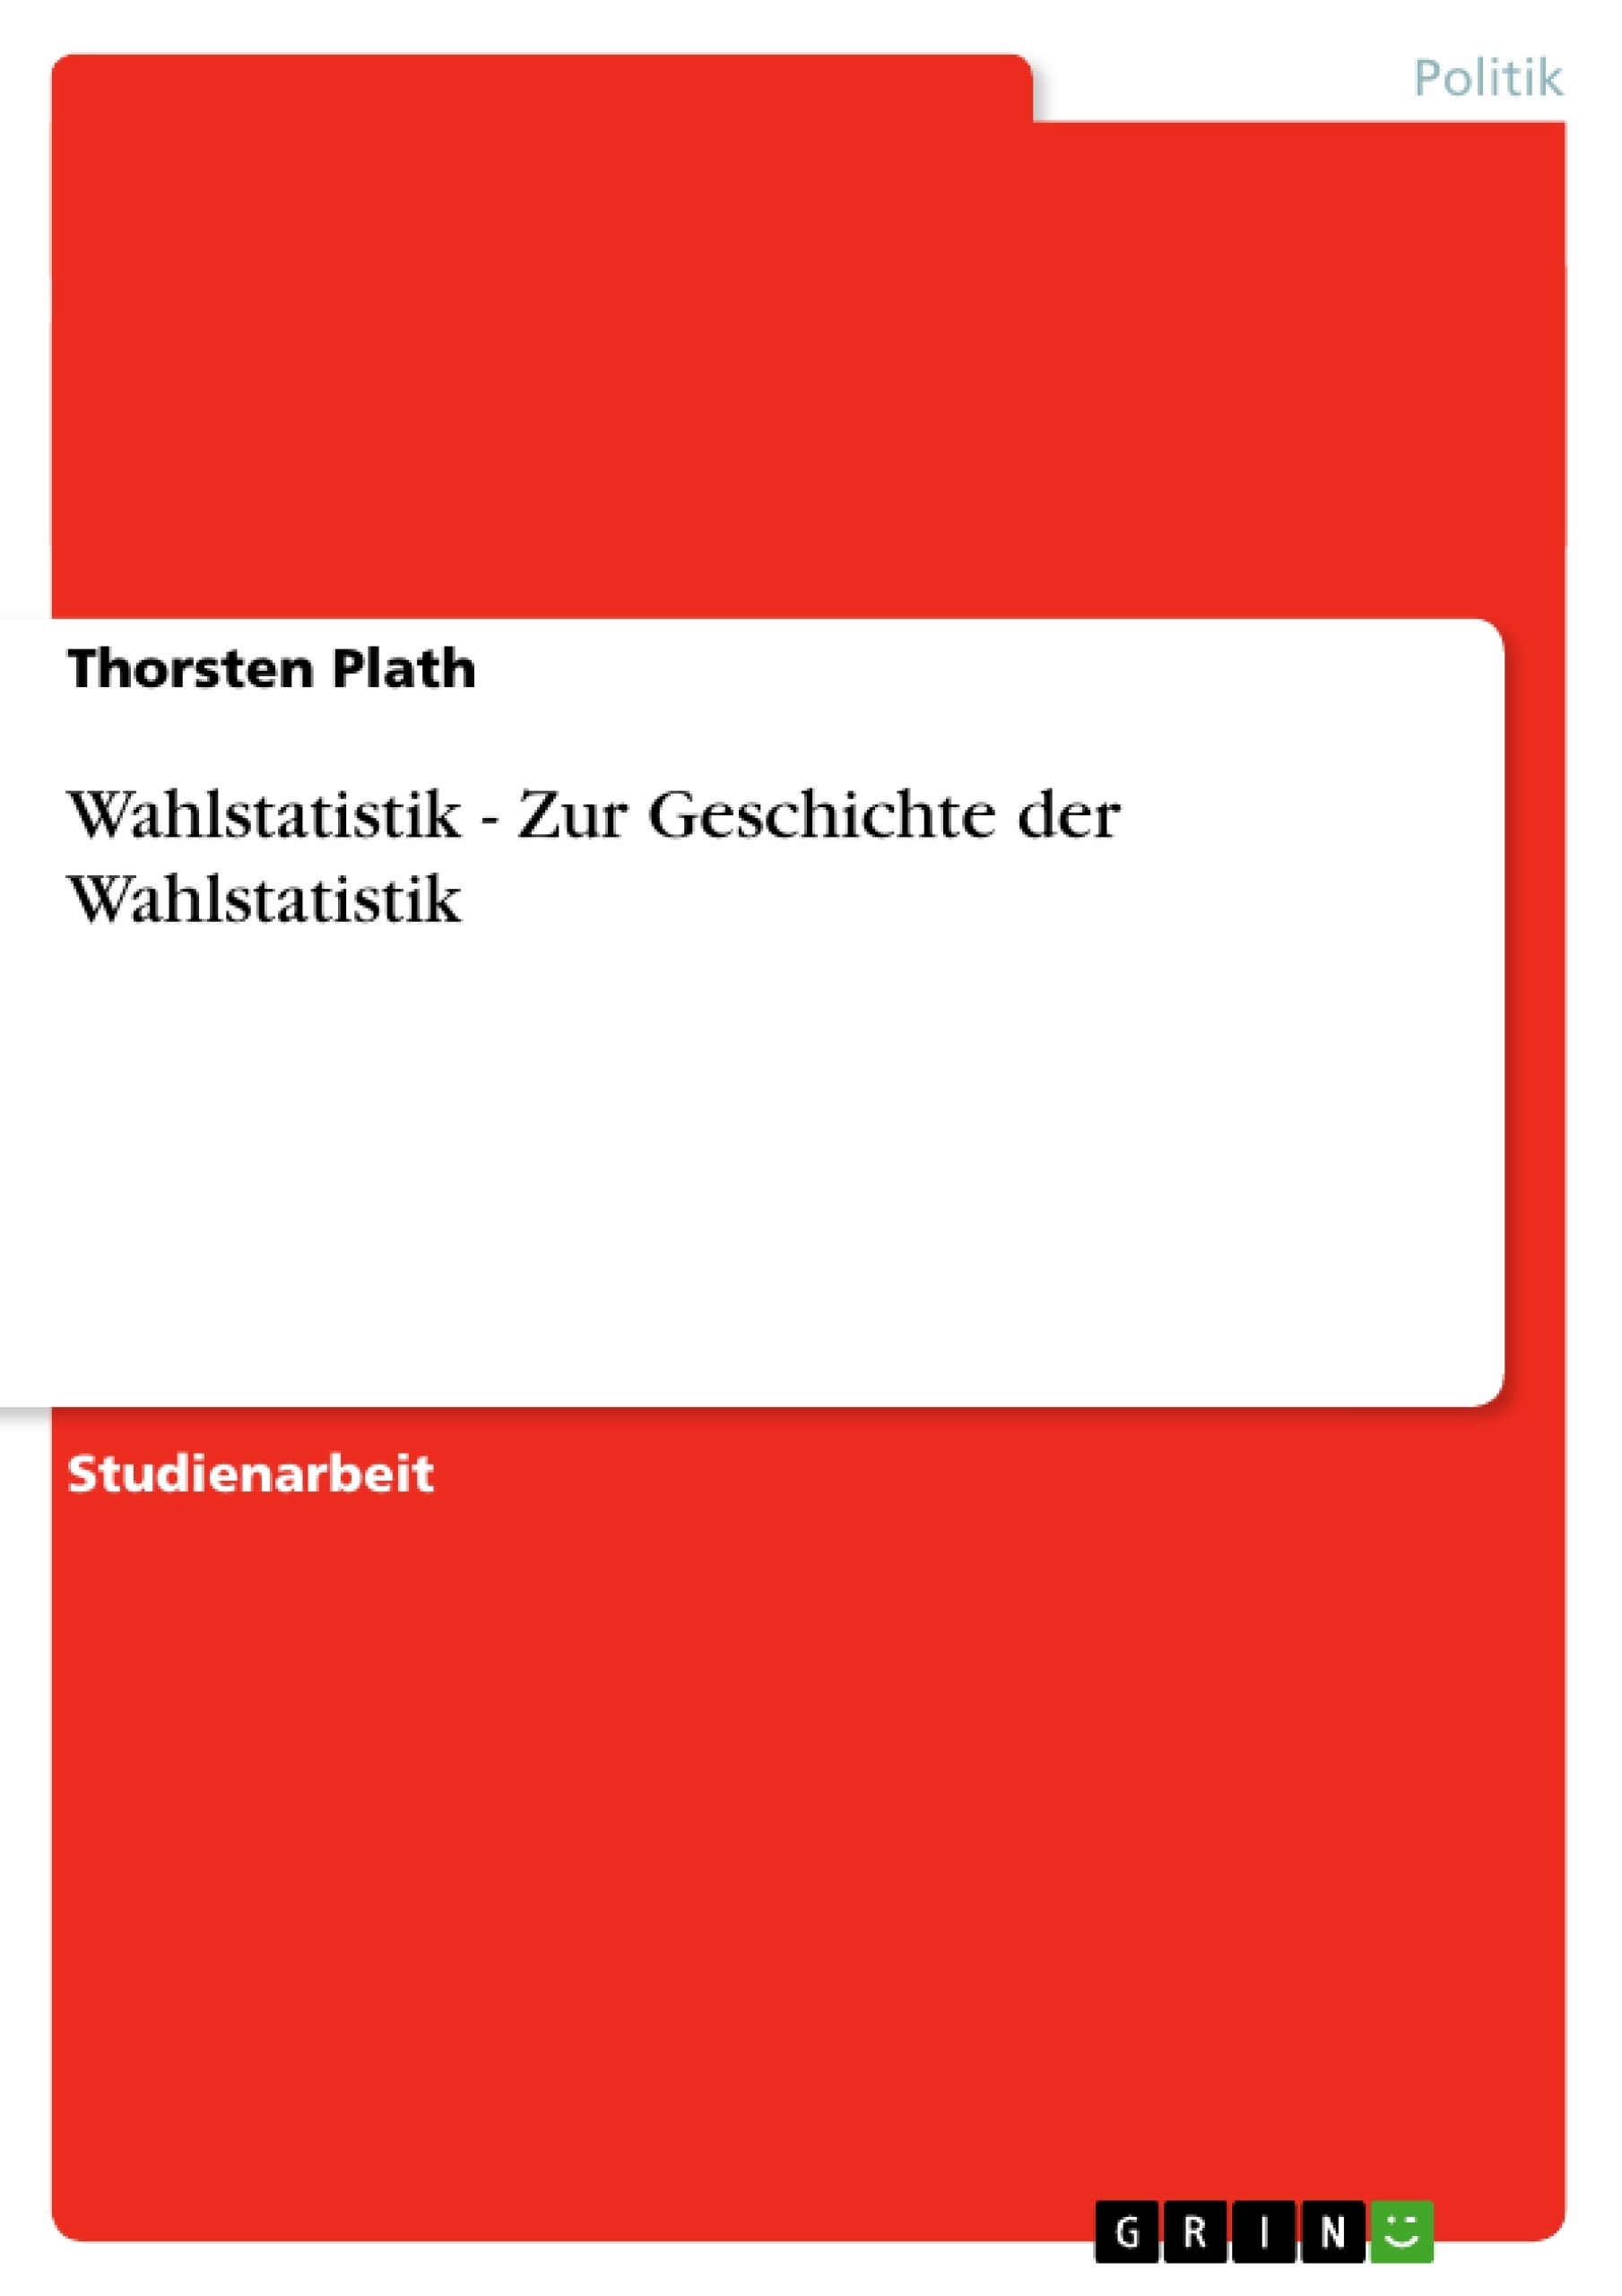 Title: Wahlstatistik - Zur Geschichte der Wahlstatistik